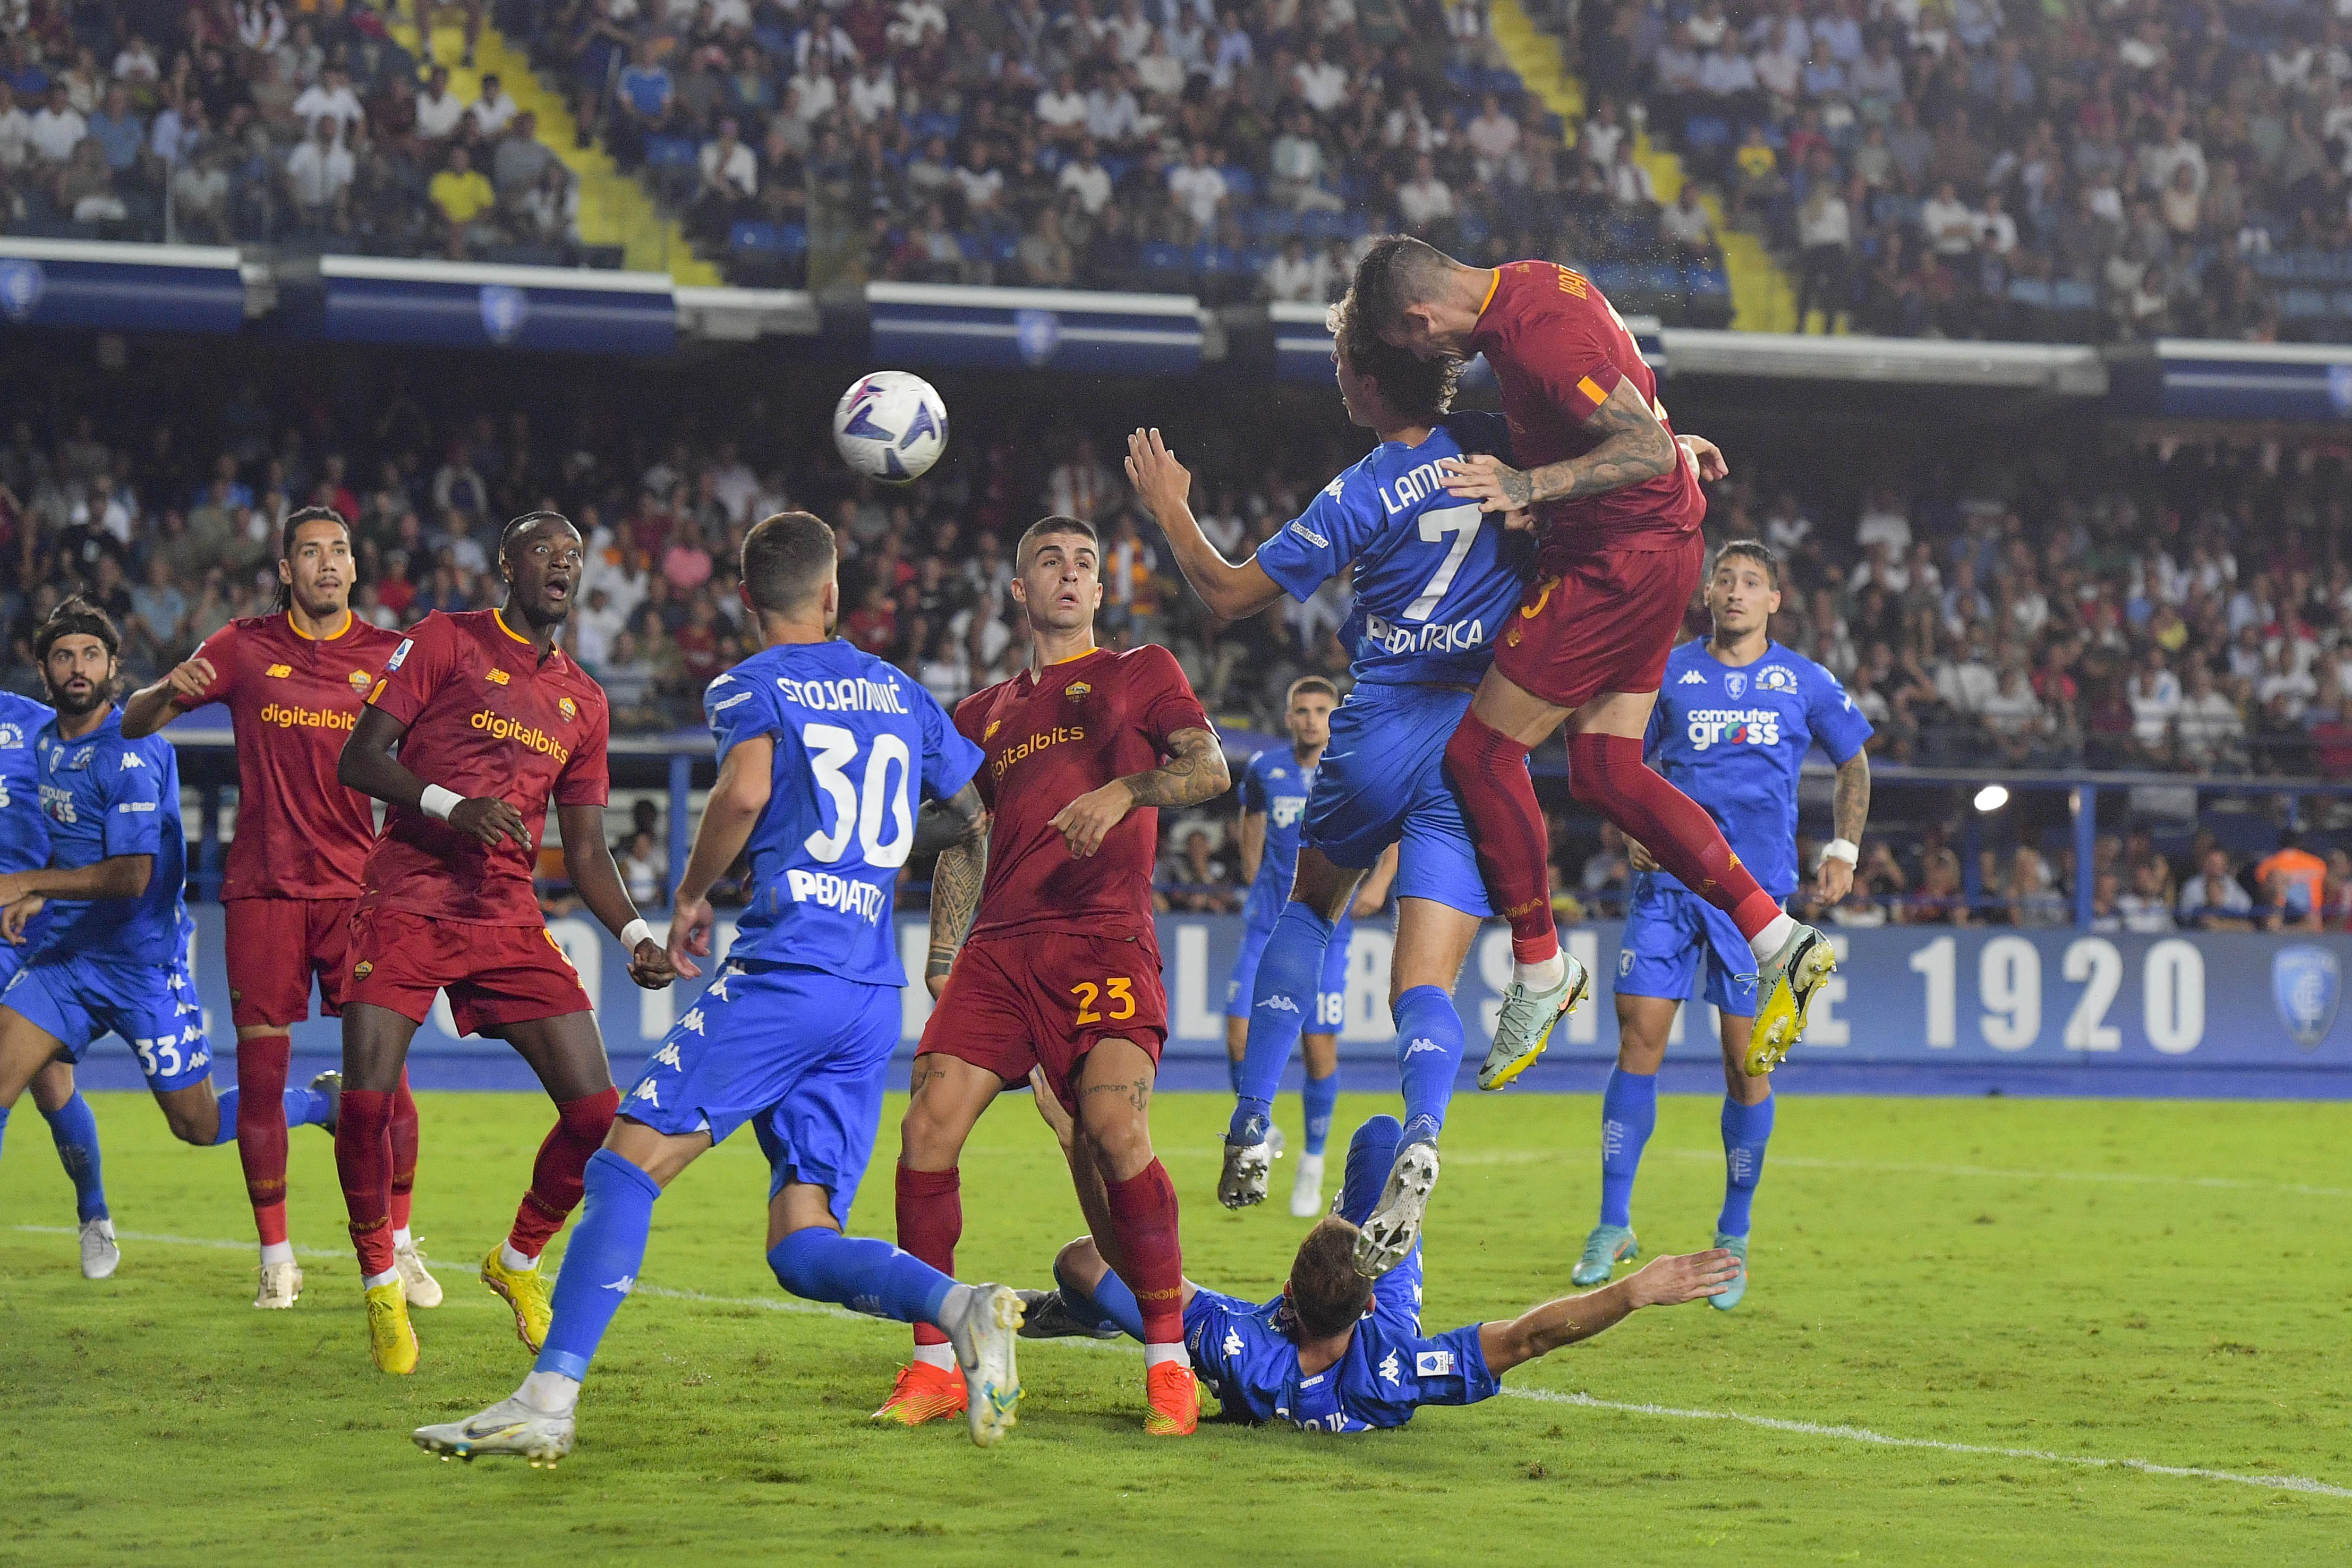 Il colpo di testa con cui Ibañez ha sfiorato il gol a Empoli